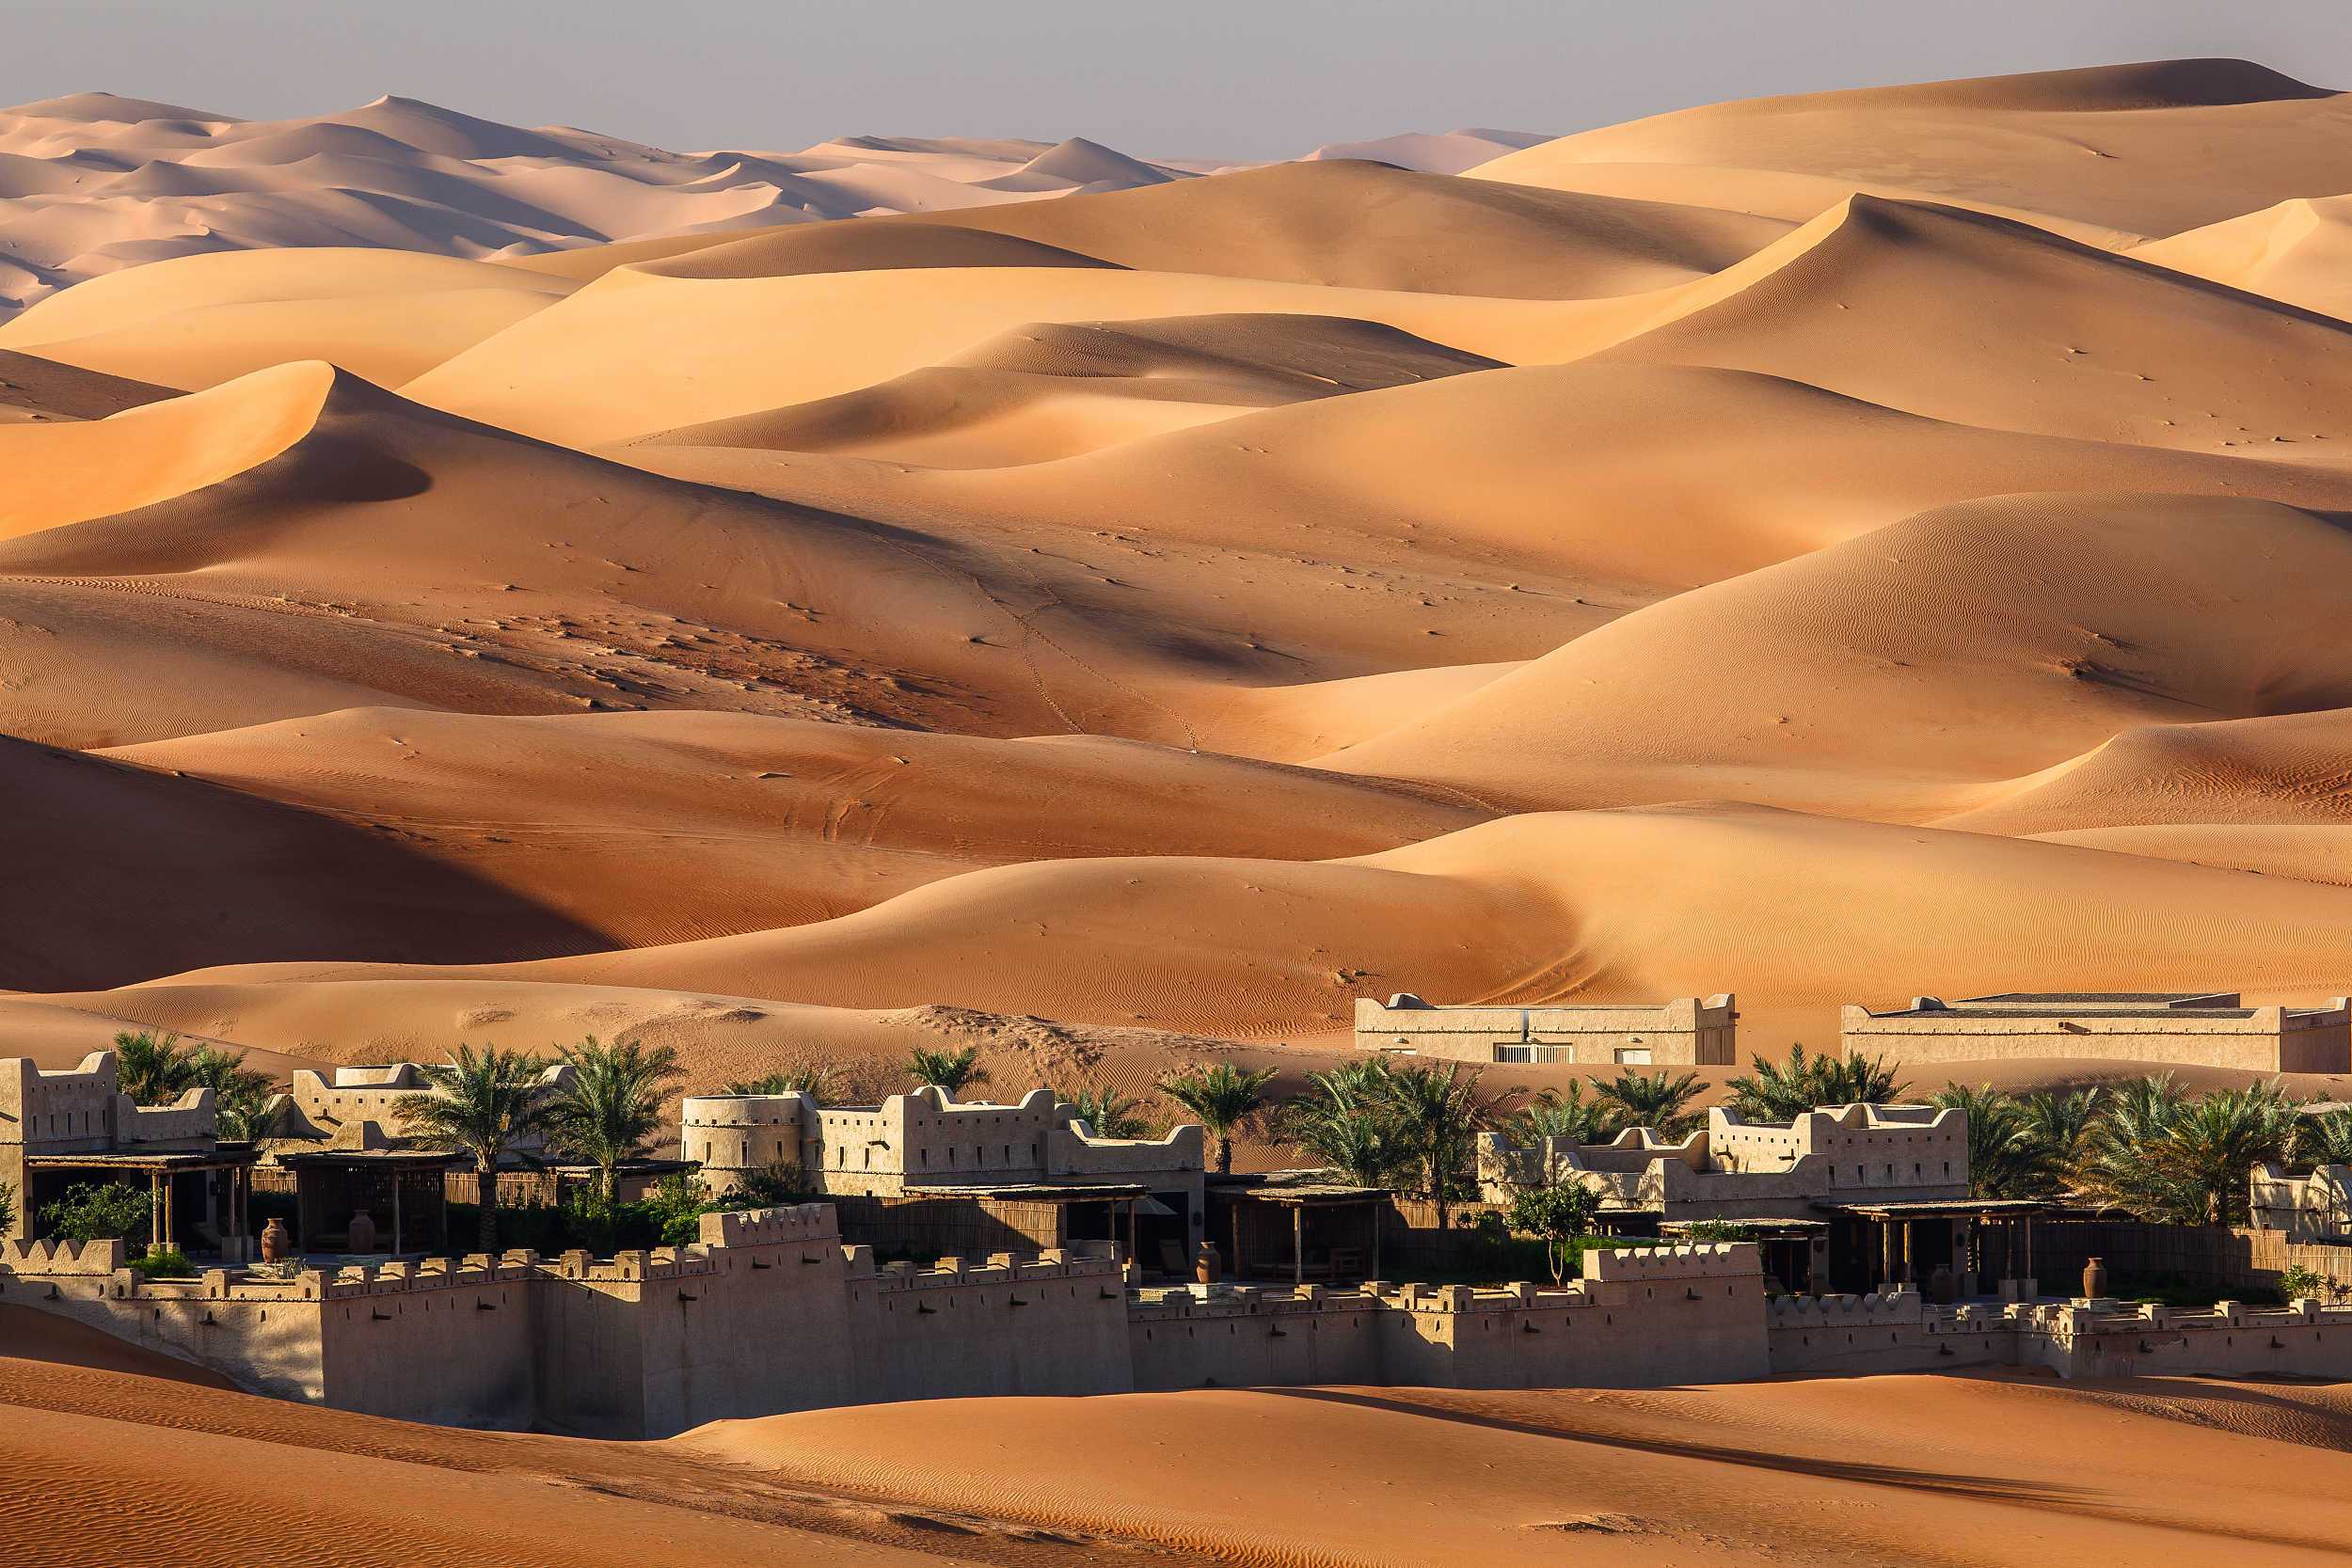 travelid 的想法: 阿拉伯半岛鲁卜哈利沙漠是世界上最